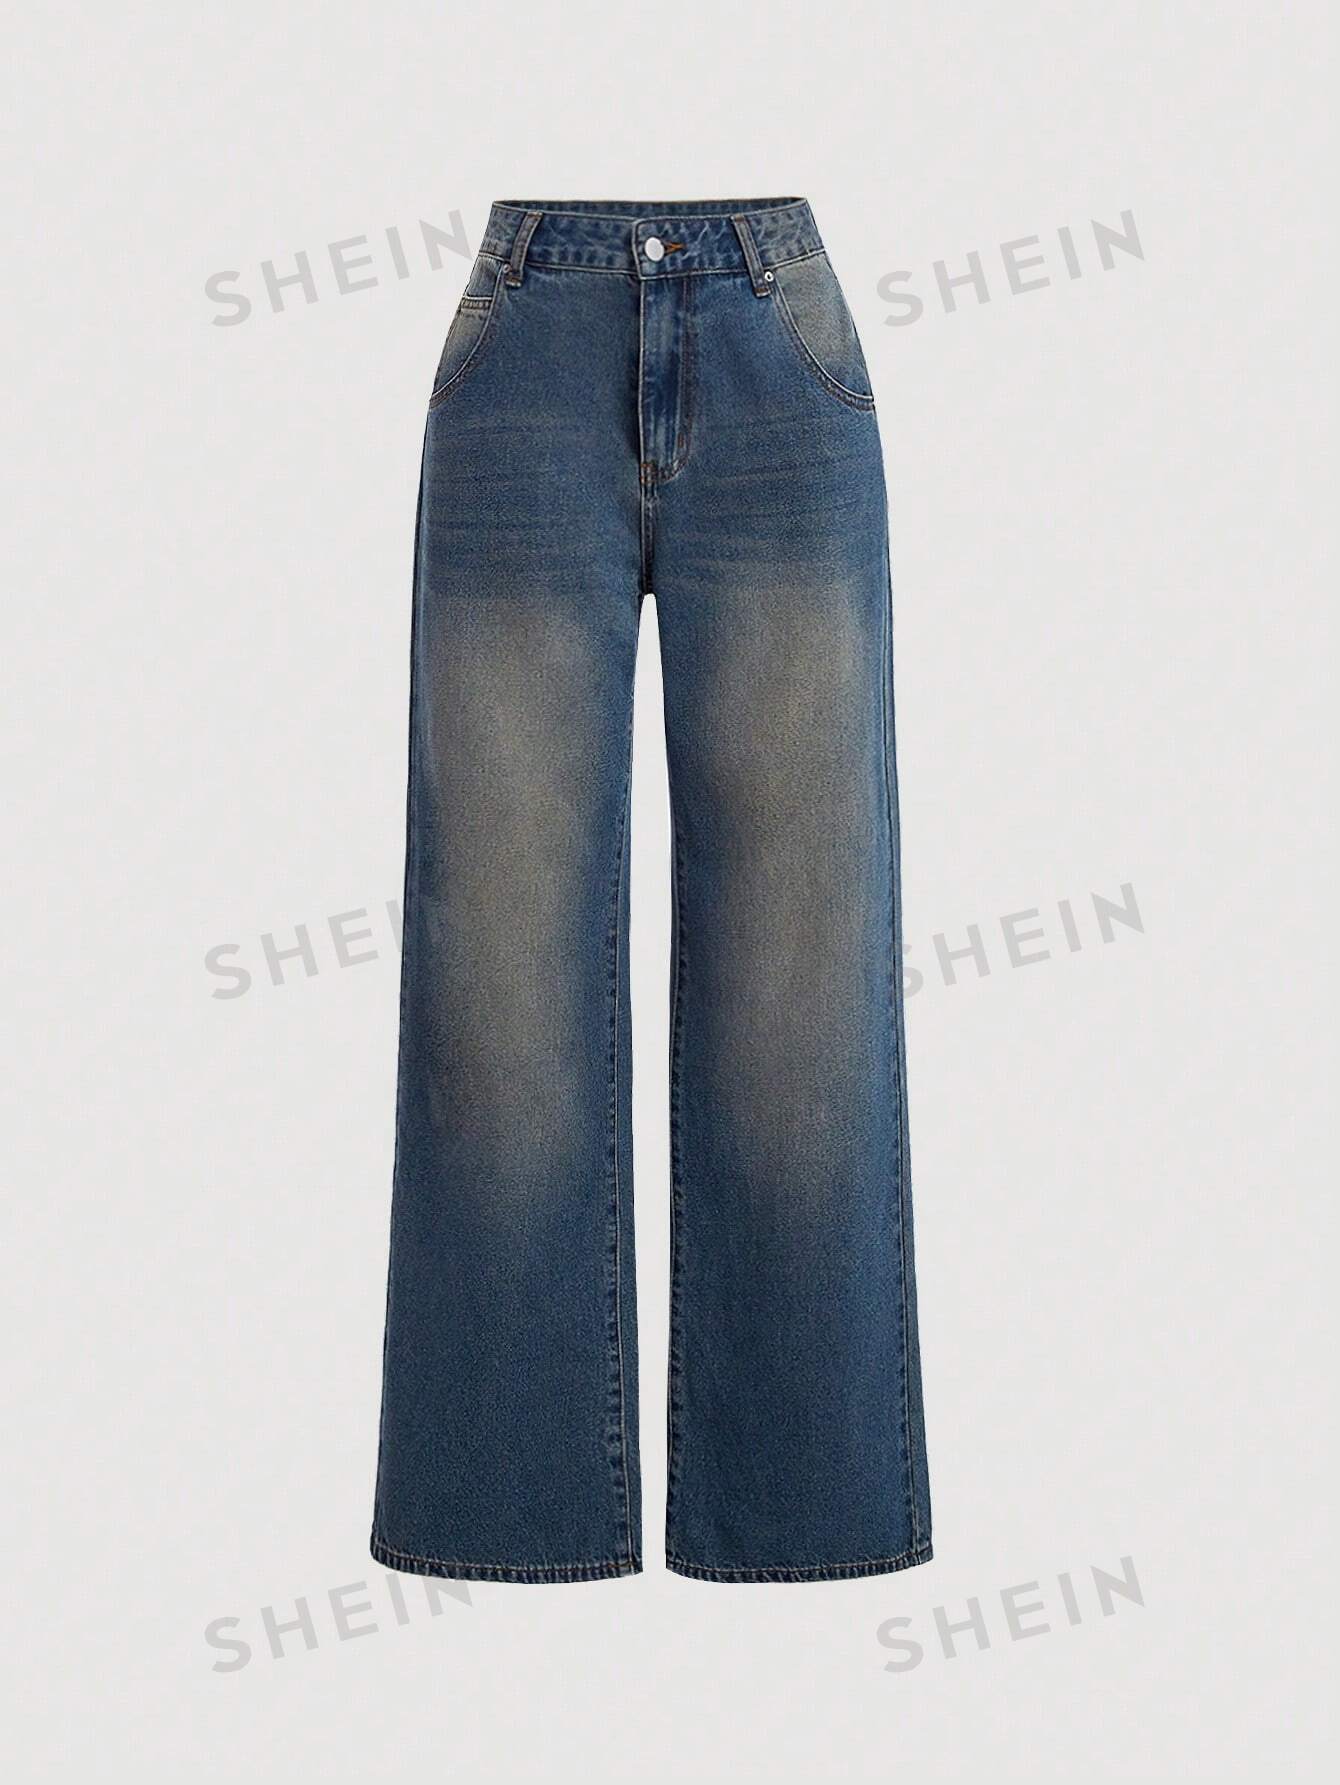 SHEIN MOD женские джинсы с карманами, темная стирка